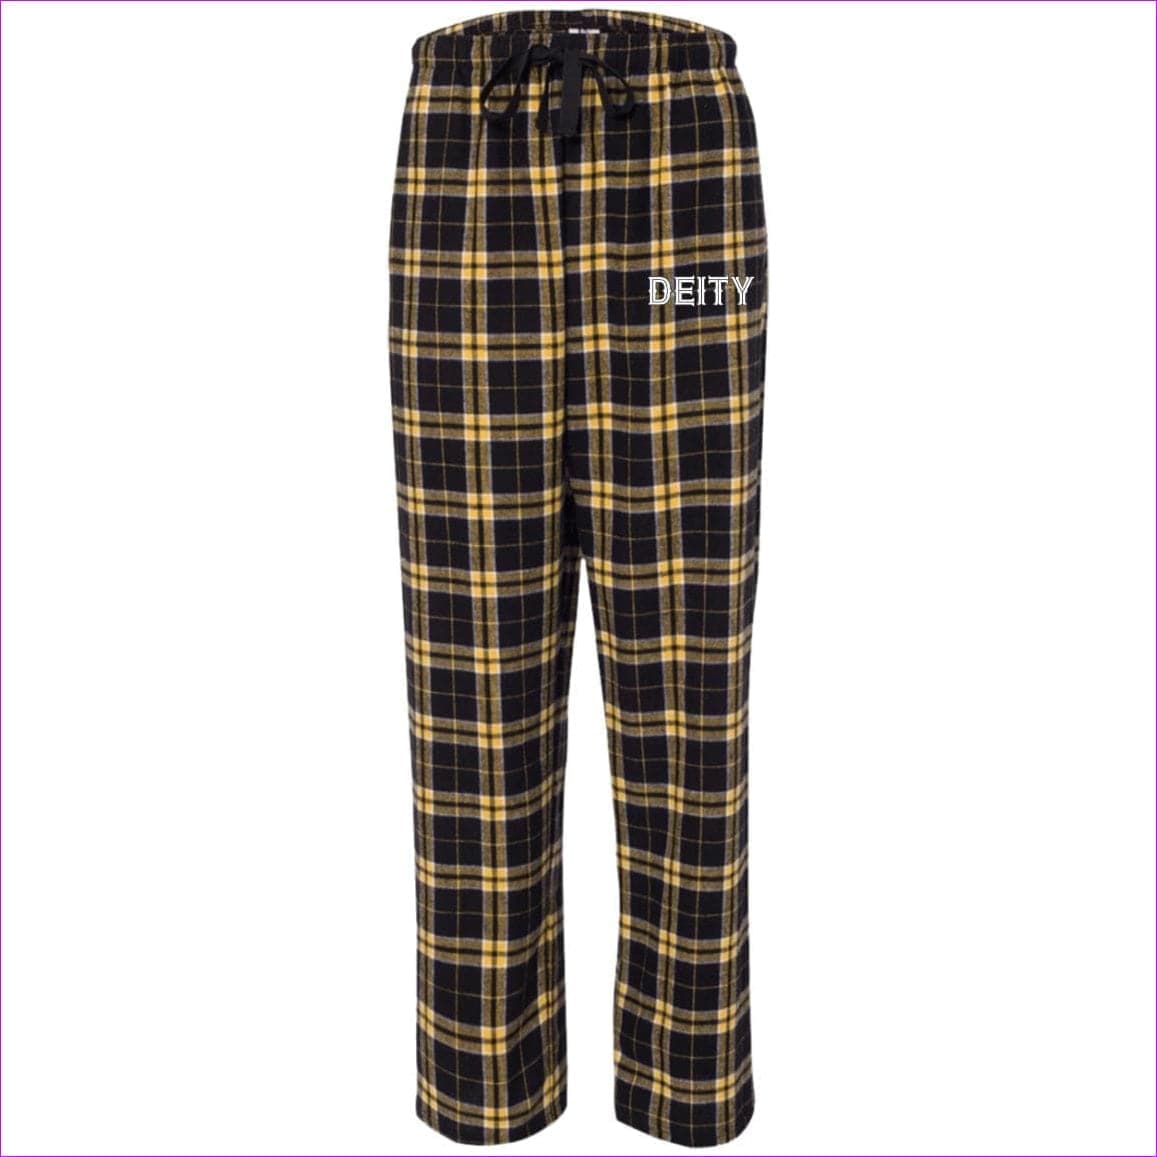 Black/Gold Deity Flannel Pants - unisex pajamas Pants at TFC&H Co.